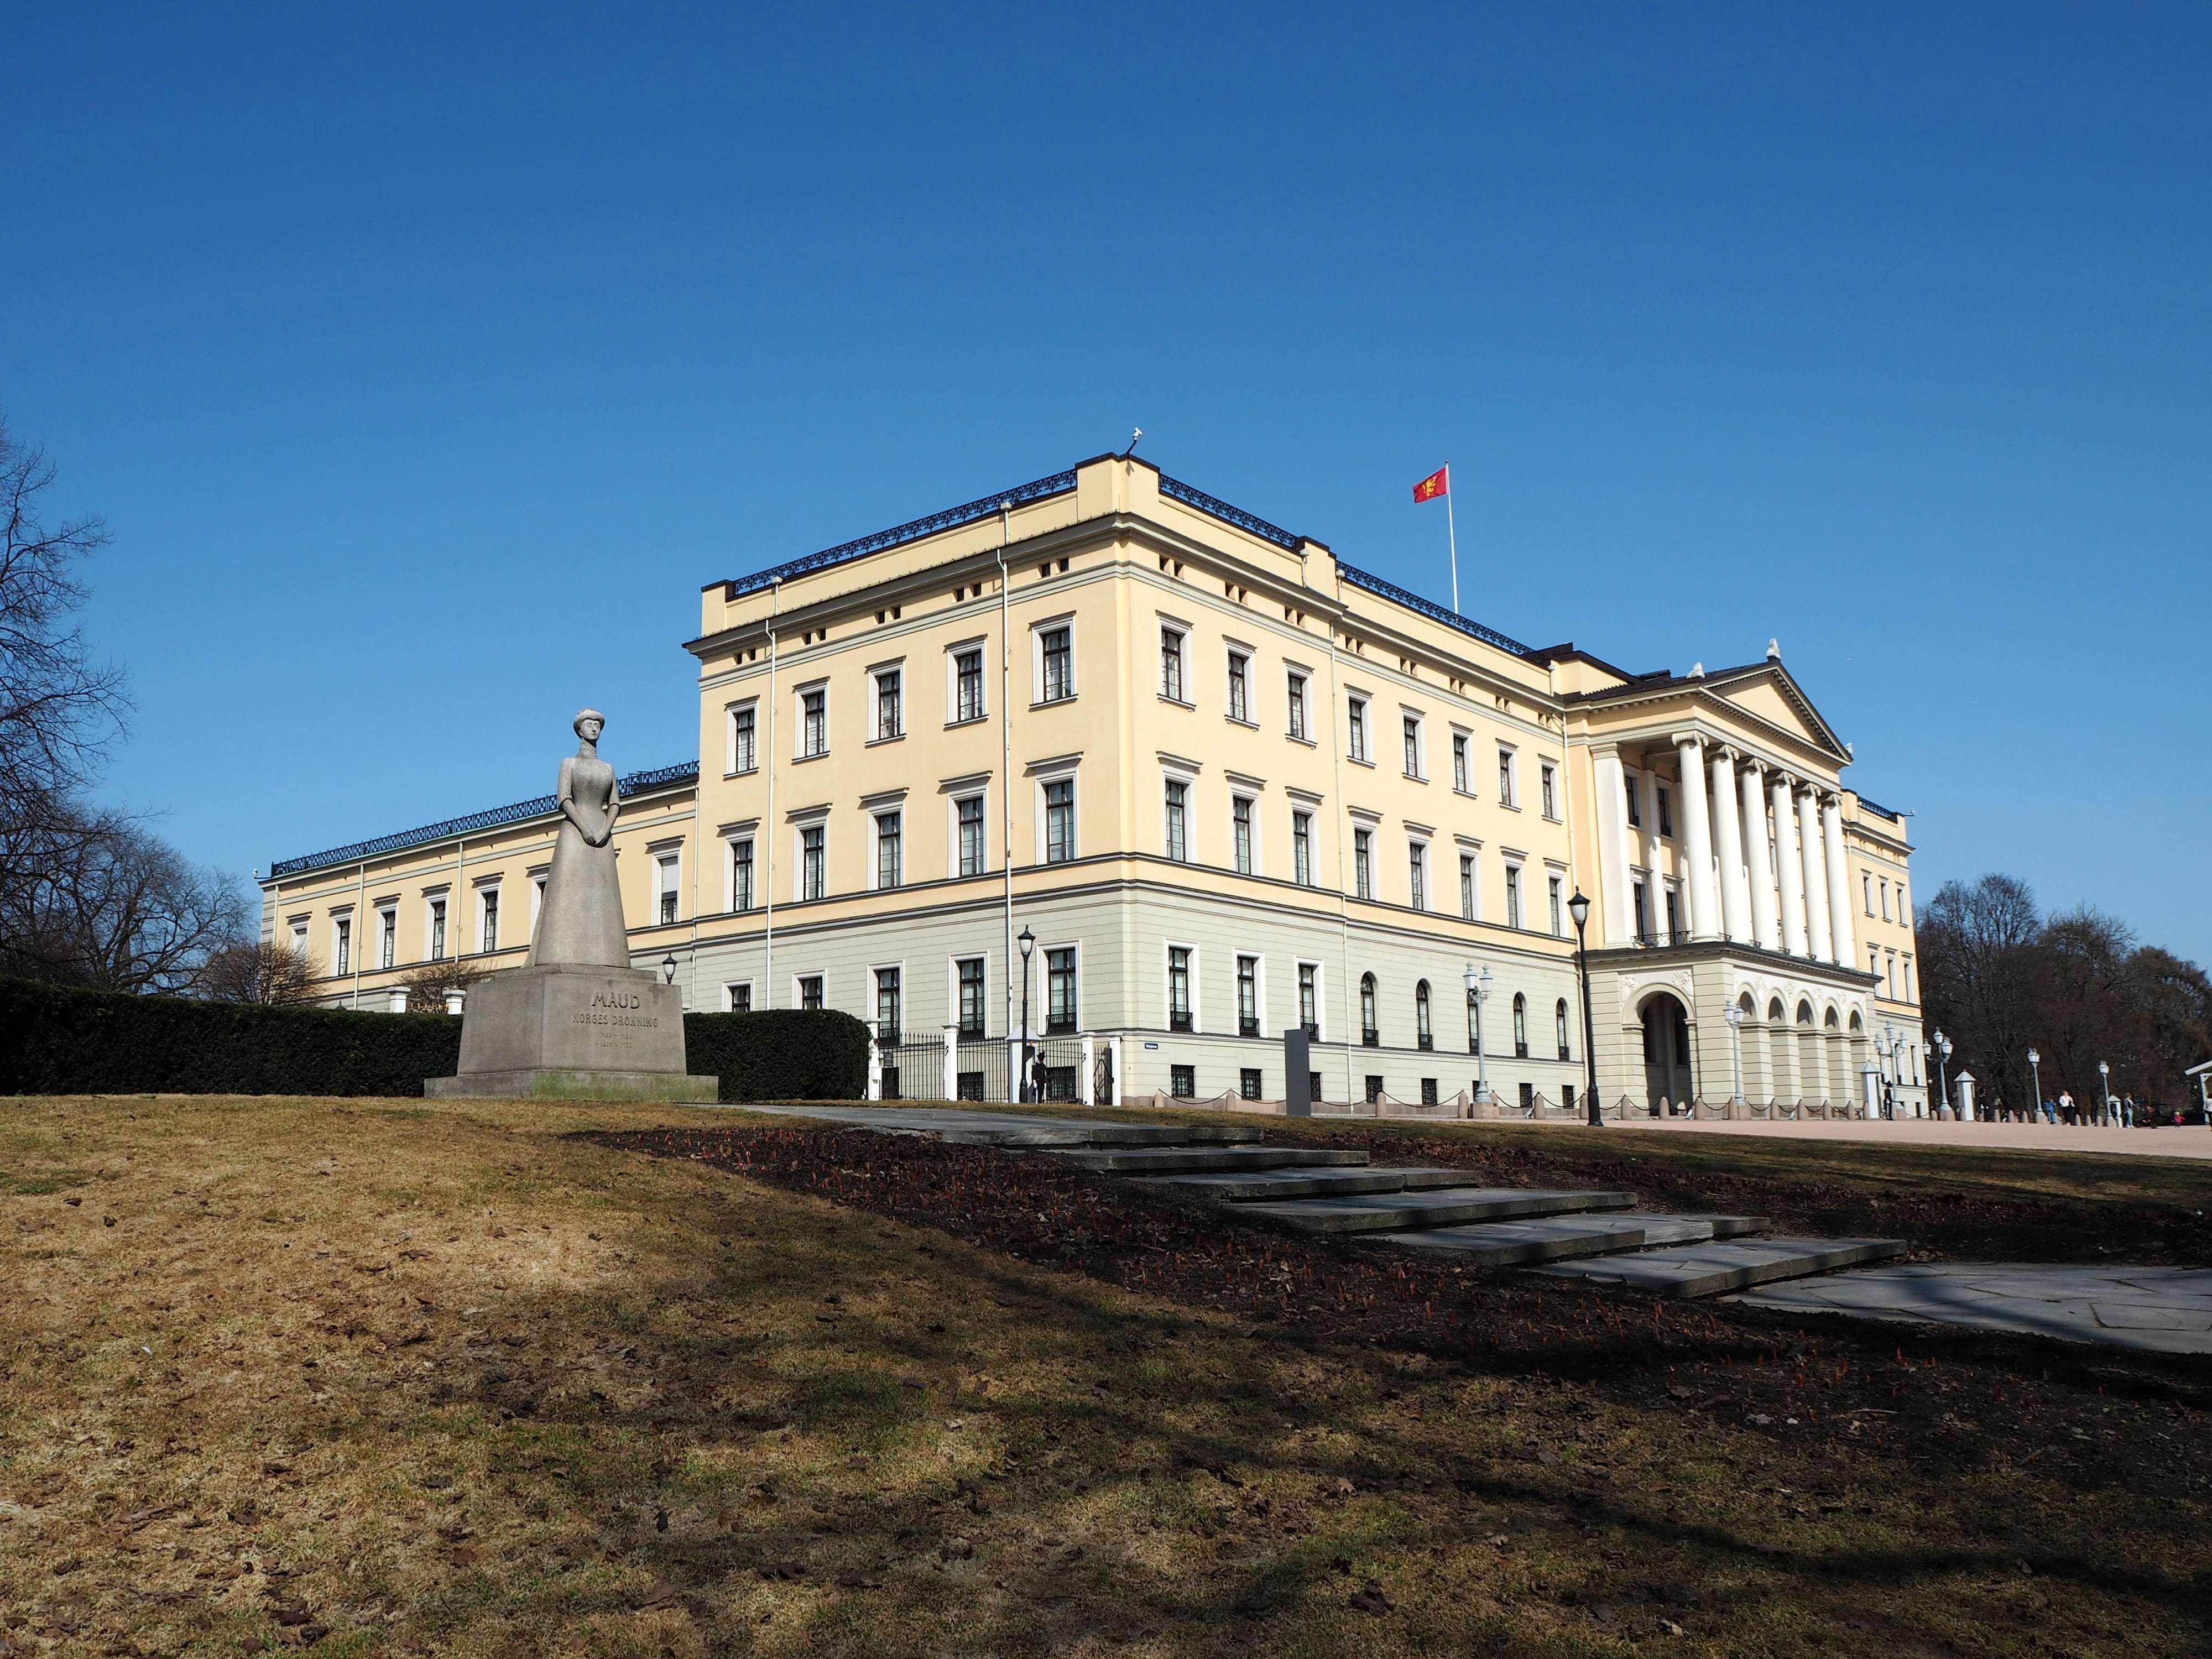 Norway's Royal Palace